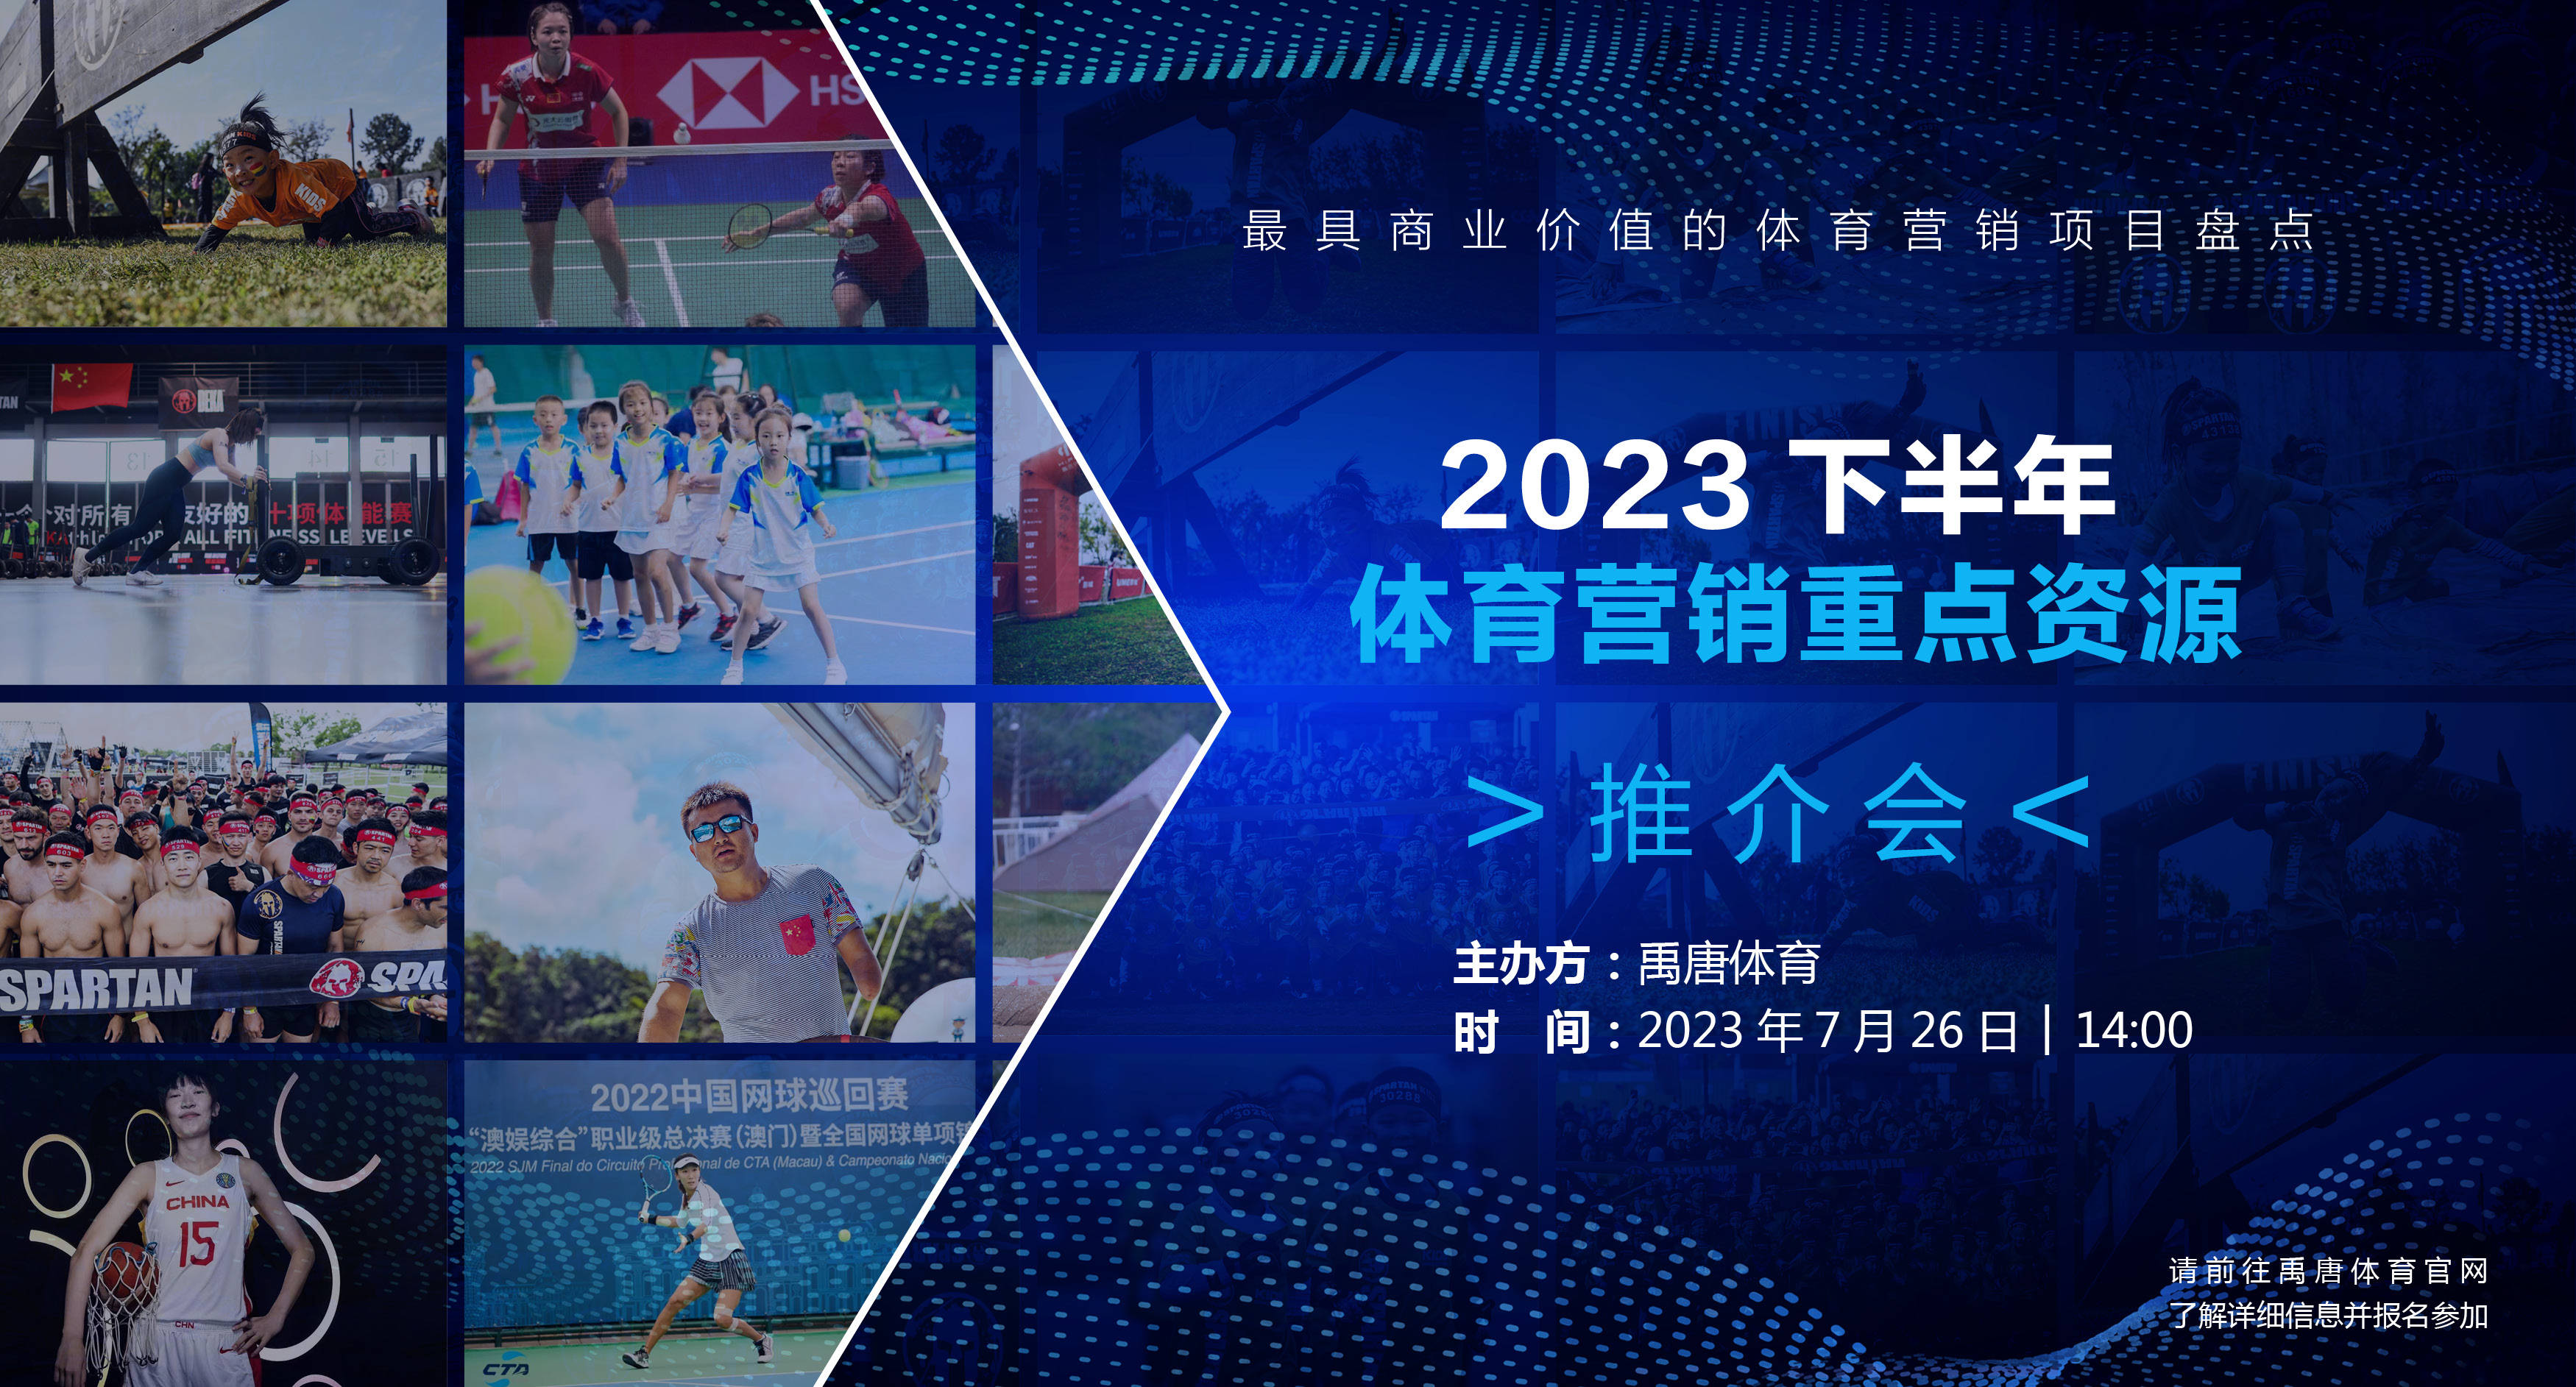 禹唐体育7月26日举办《2023下半年重点体育营销项目资源推介》直播专场